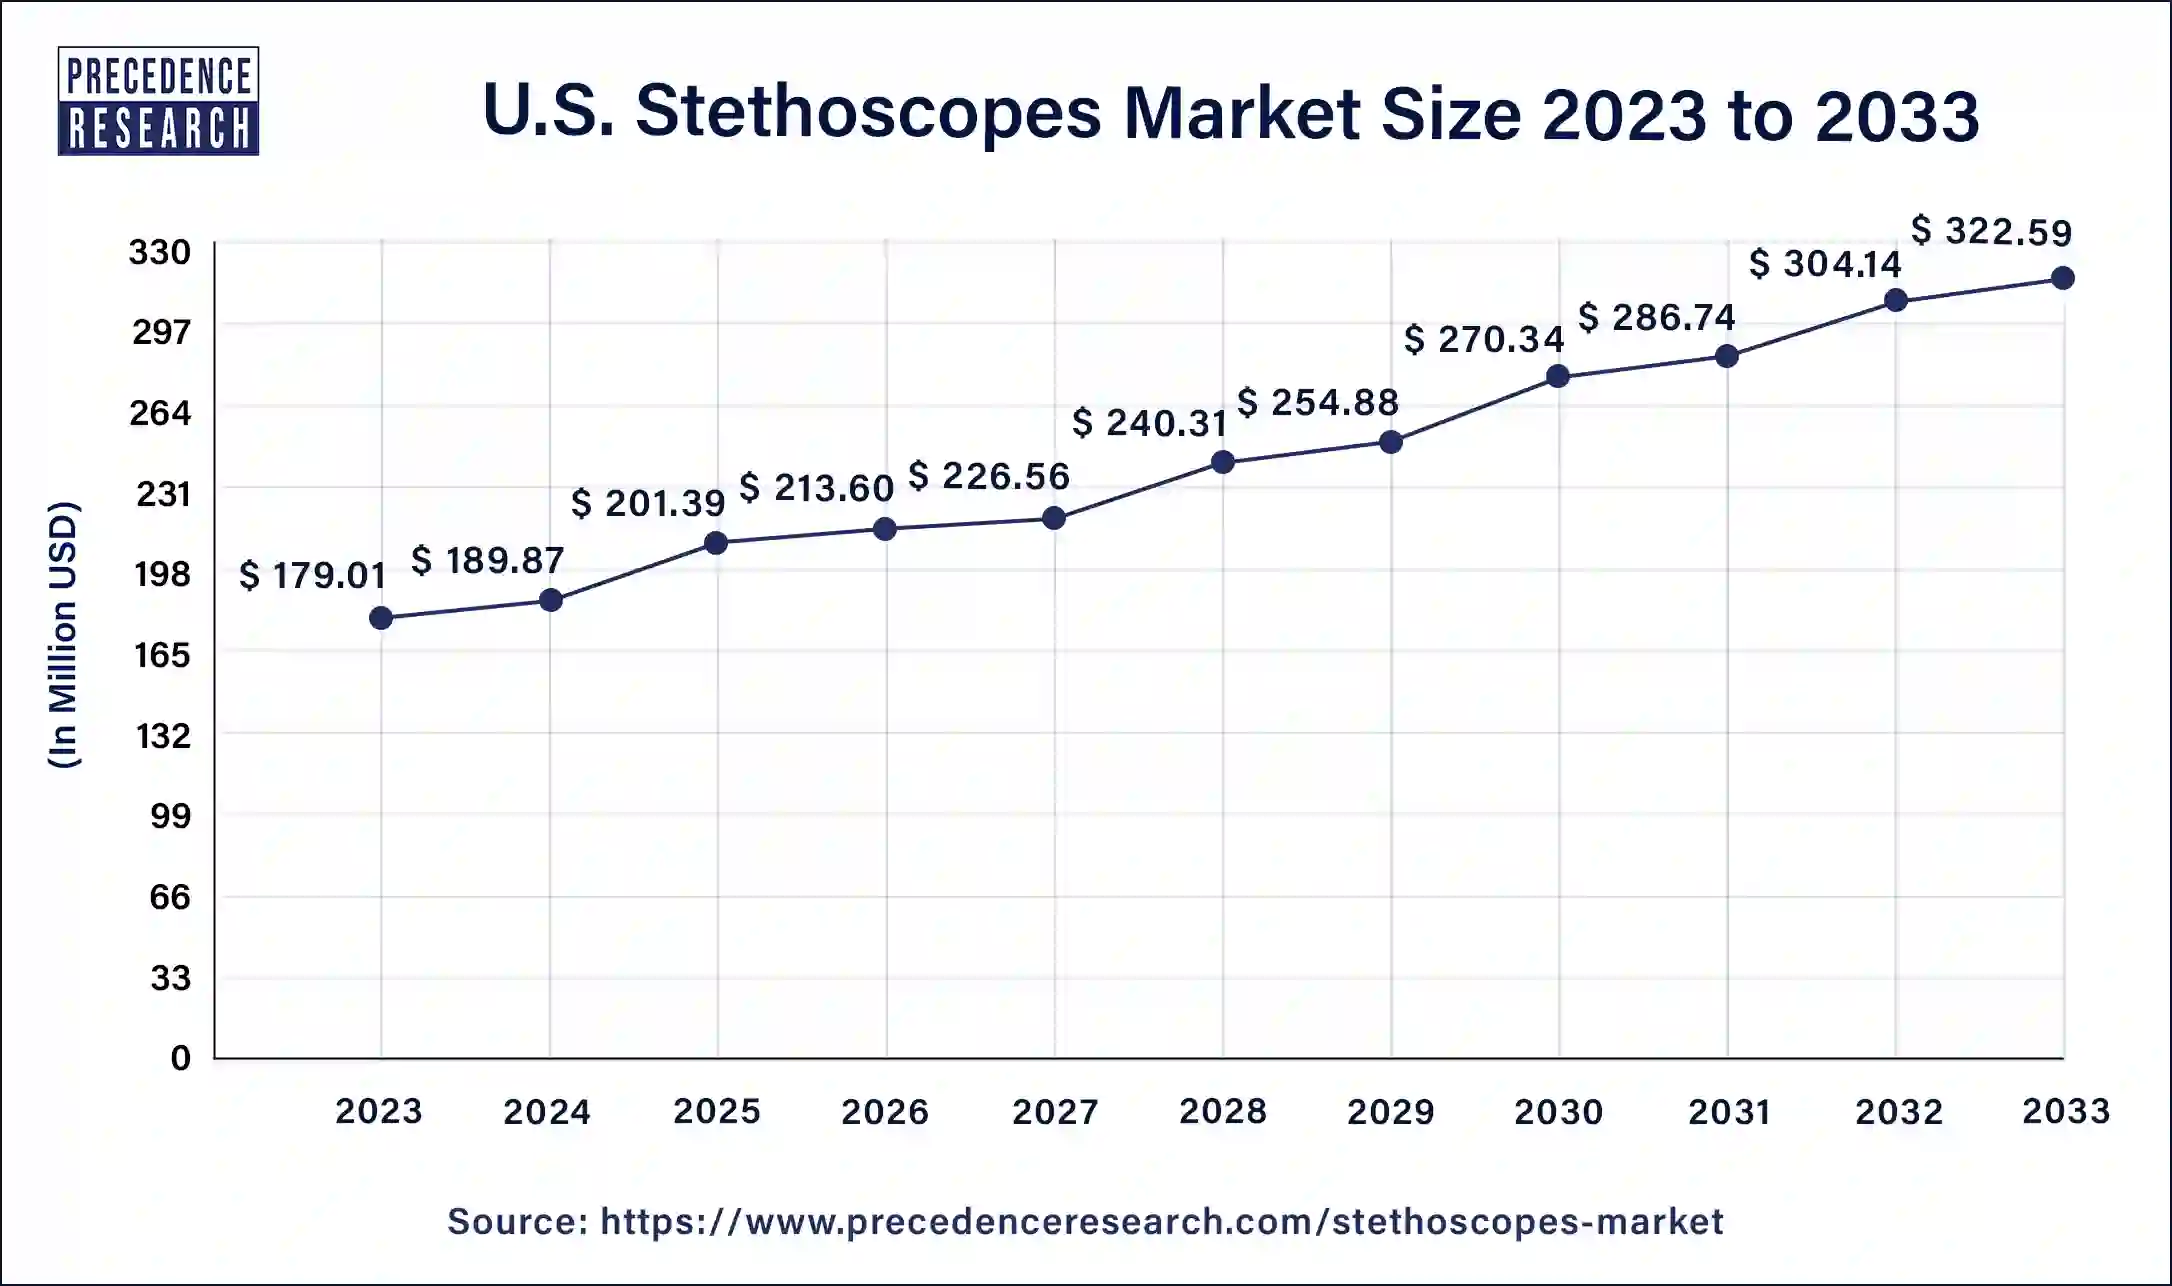 U.S. Stethoscopes Market Size 2024 to 2033